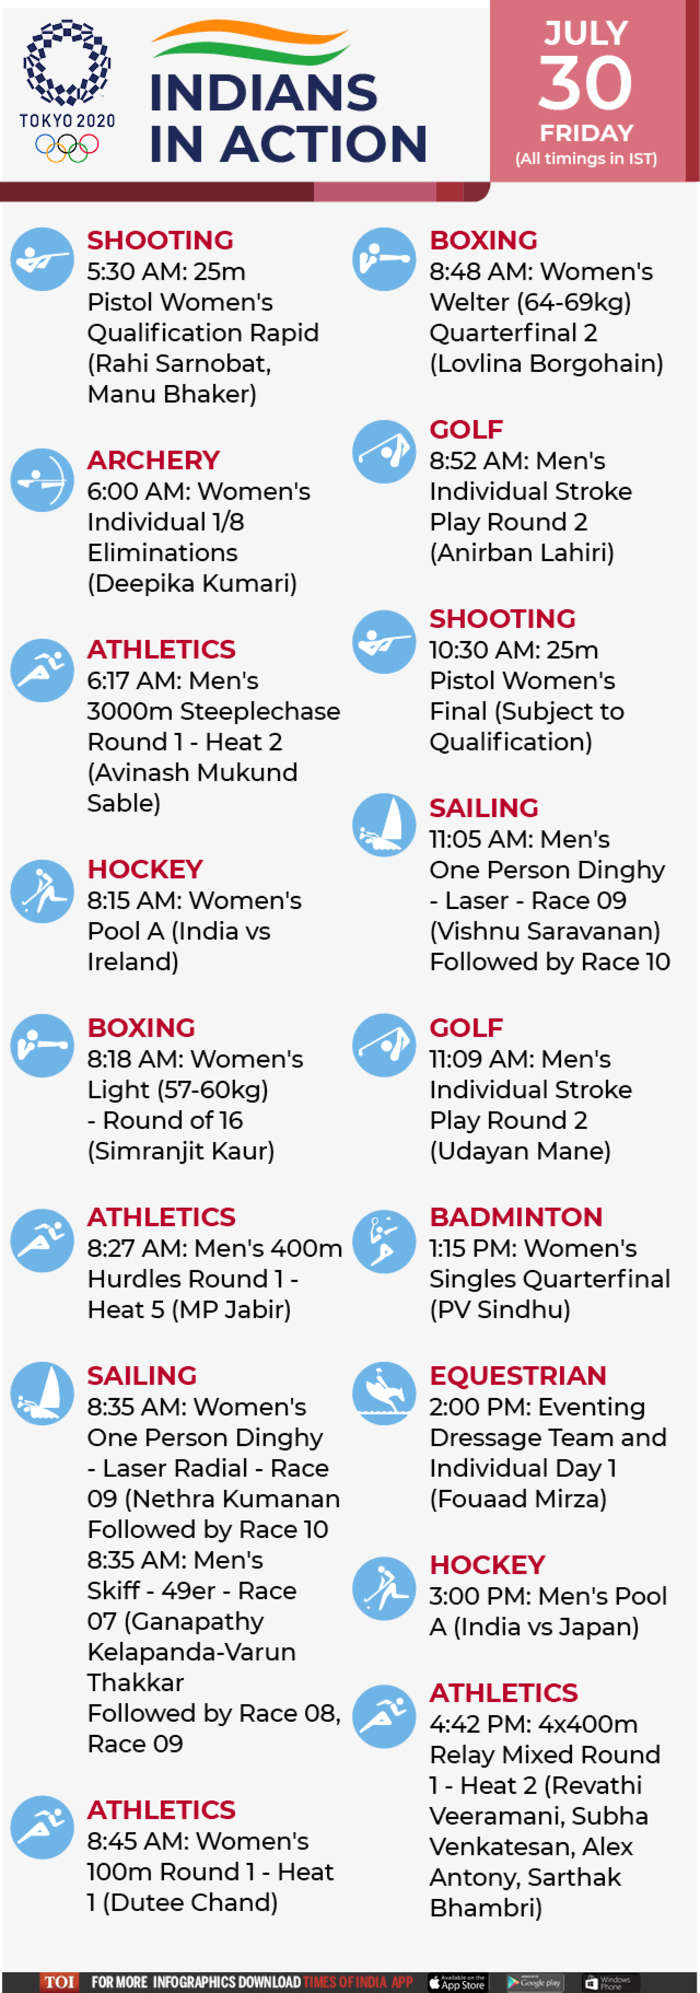 Tokyo olympic 2021 badminton schedule